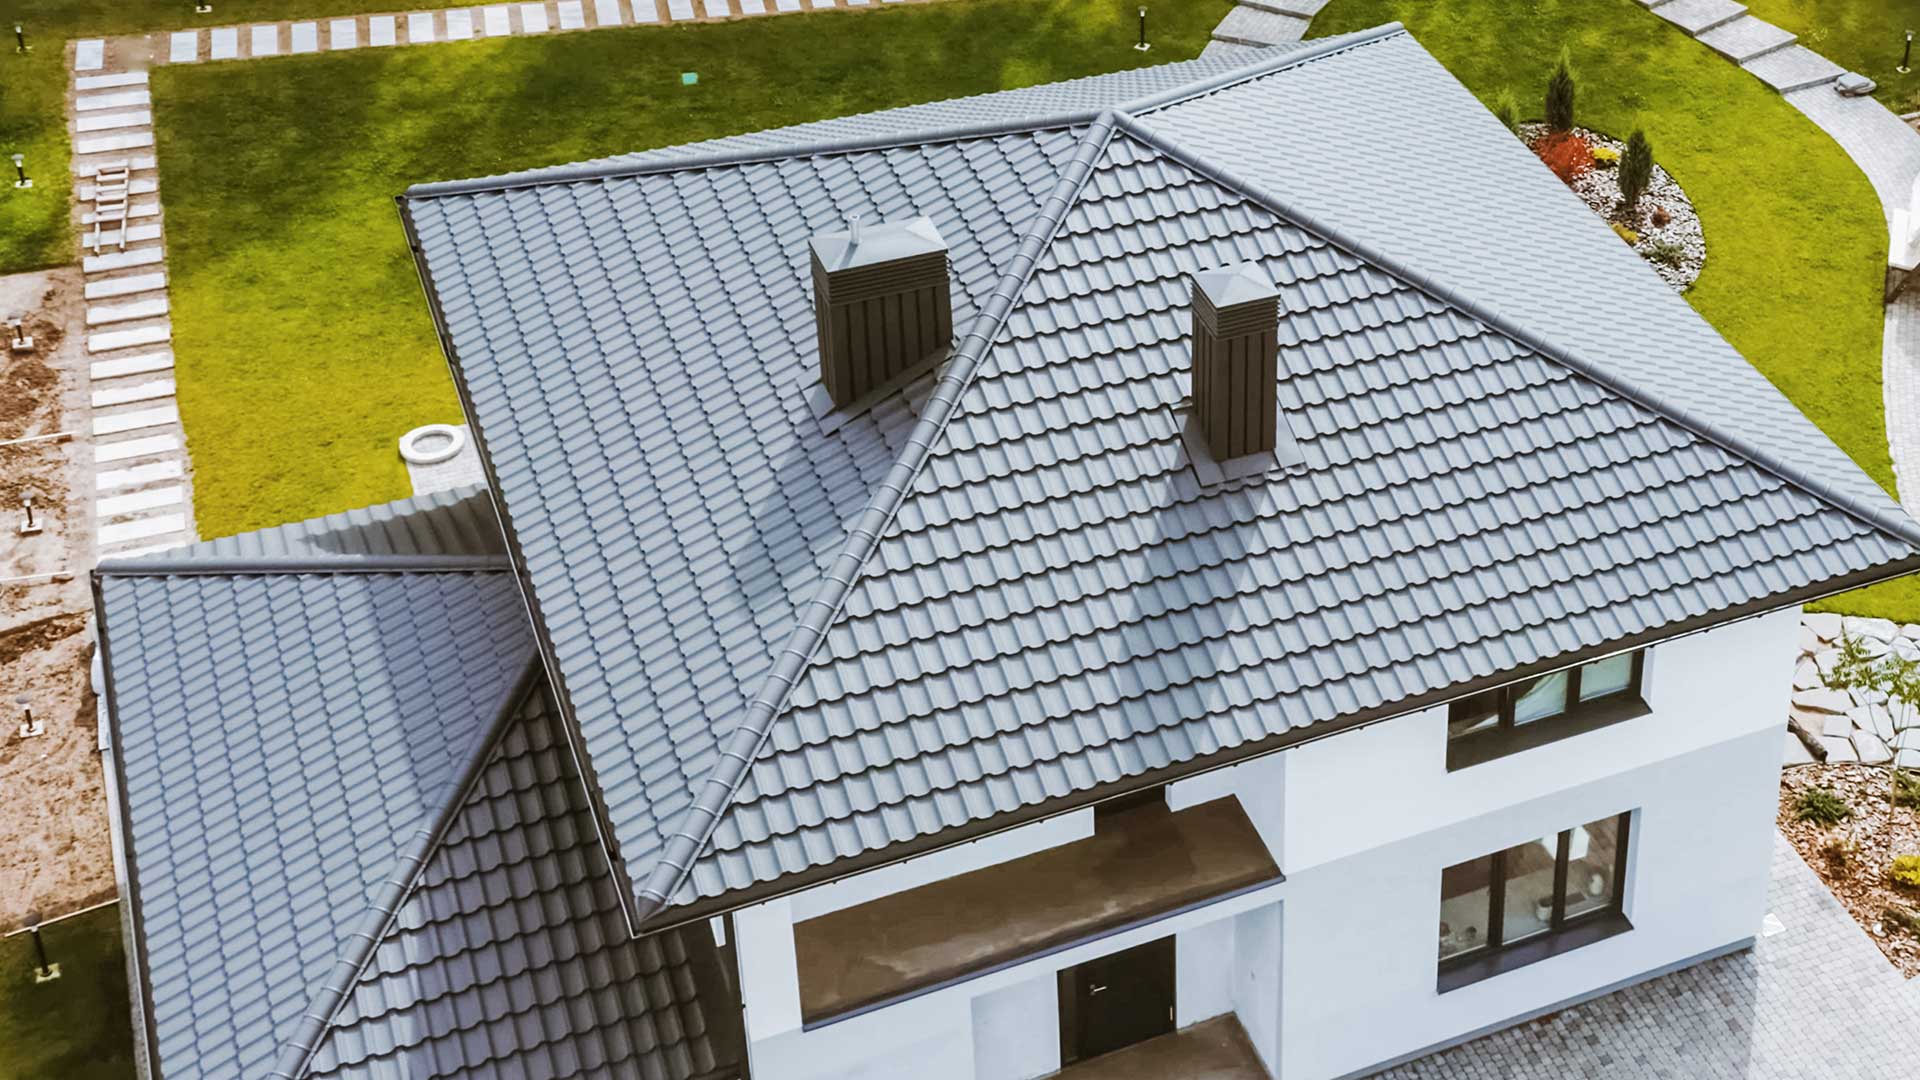 niewielki dom jednopiętrowy z cegły z dachem dwuspadowym -  w 2023